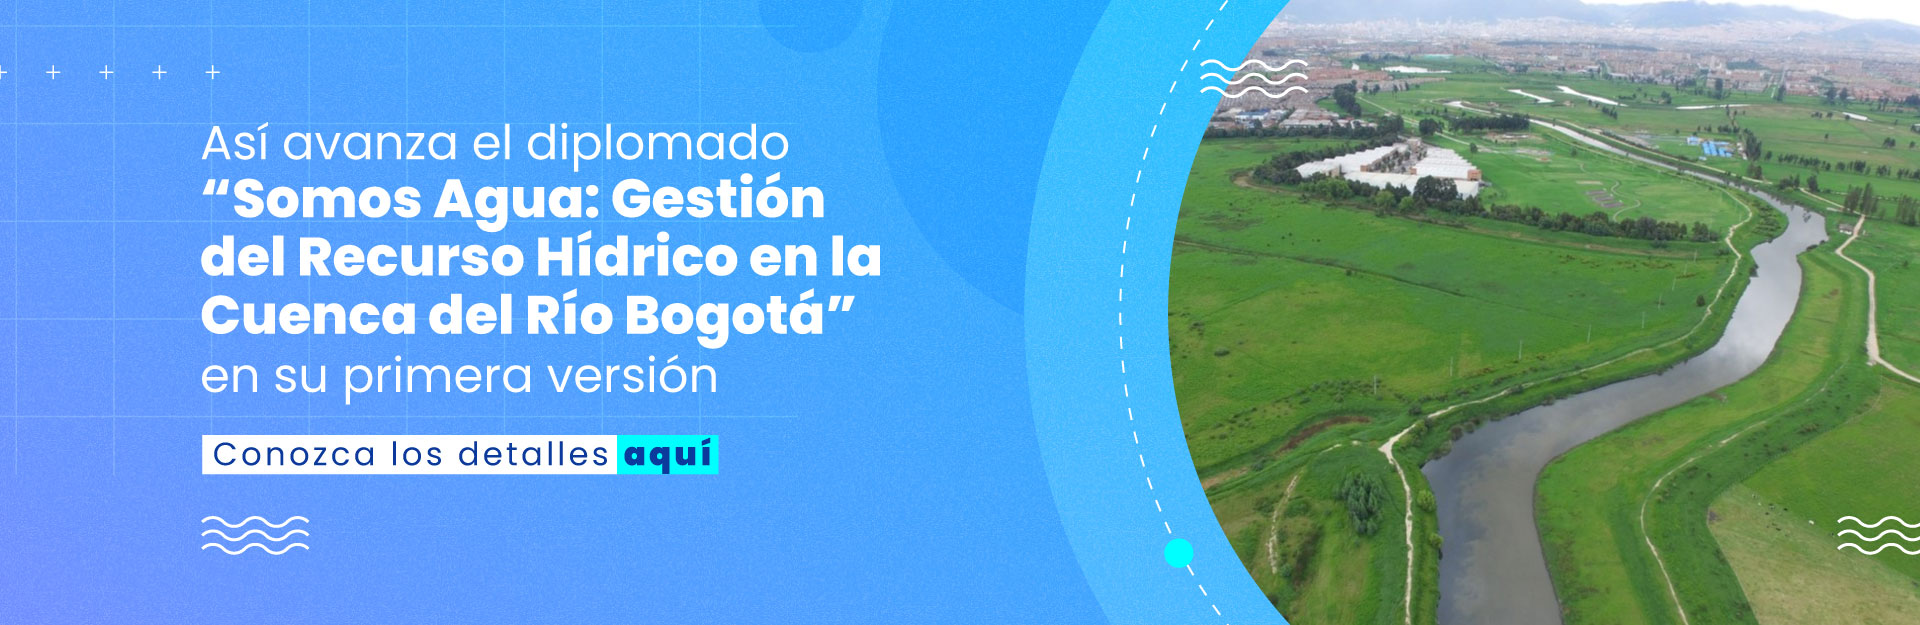  Avanza con éxito diplomado “Somos Agua: Gestión del Recurso Hídrico en la Cuenca del Río Bogotá” en su primera versión